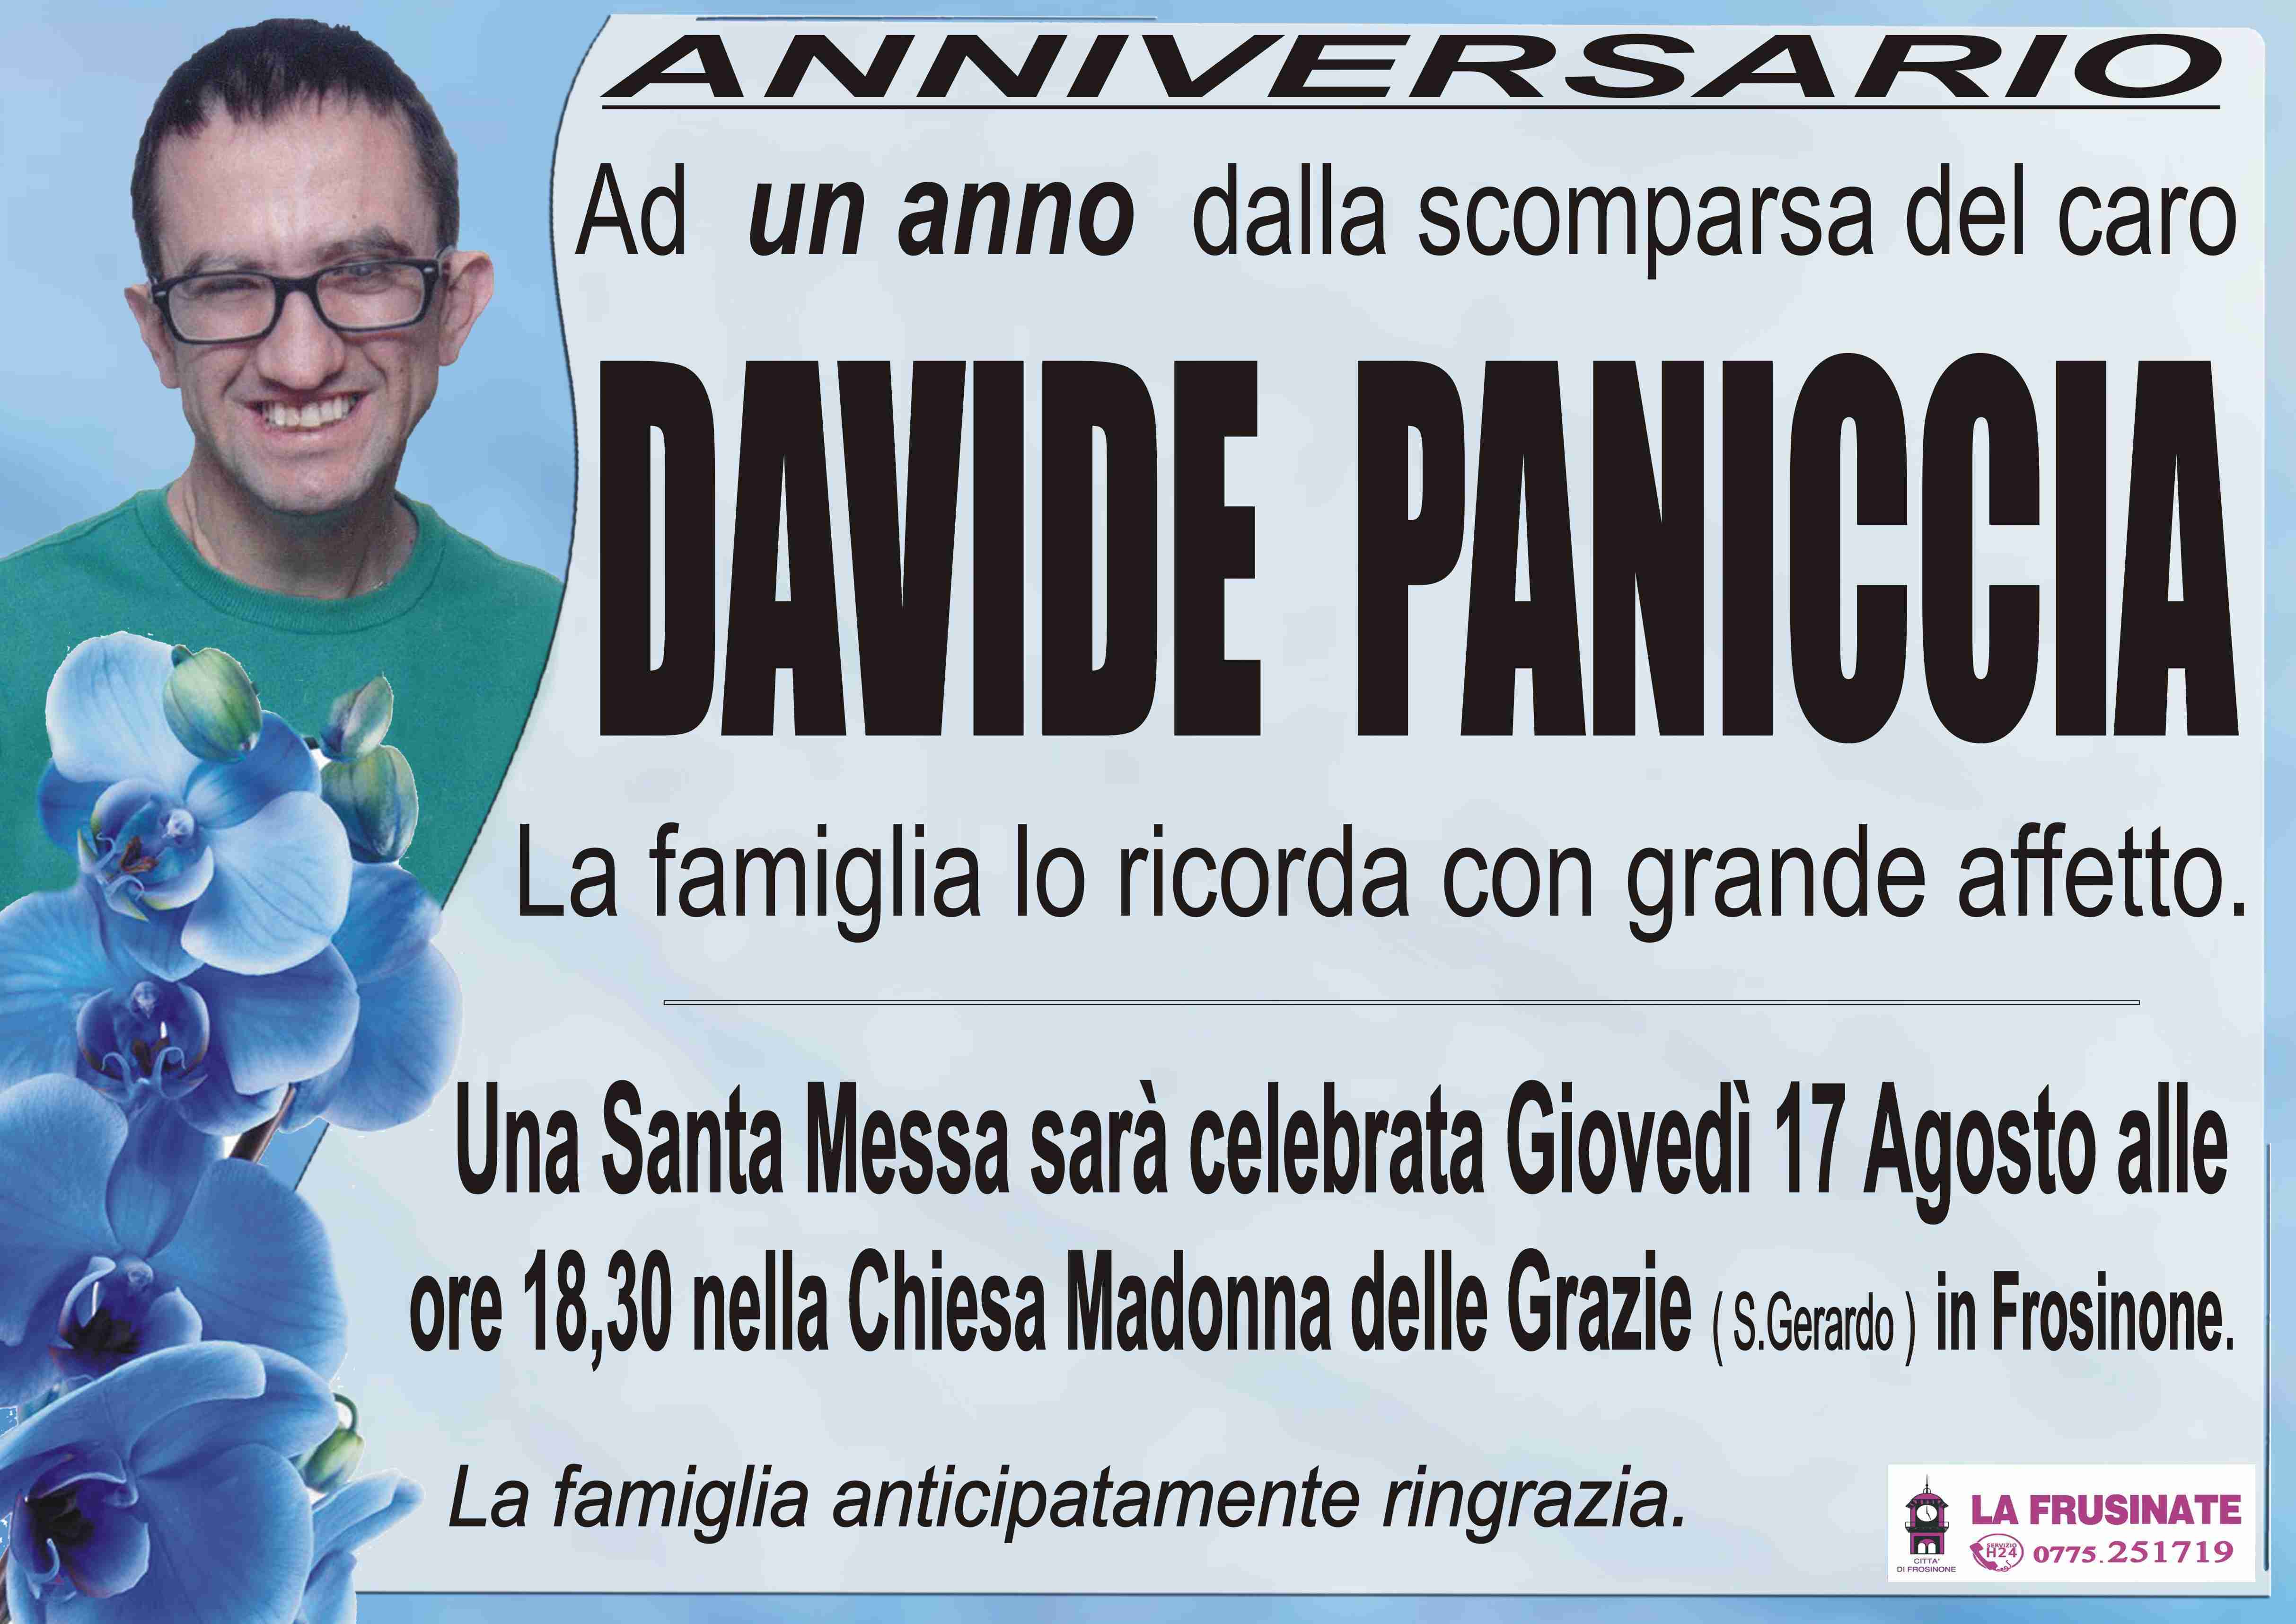 Davide Paniccia